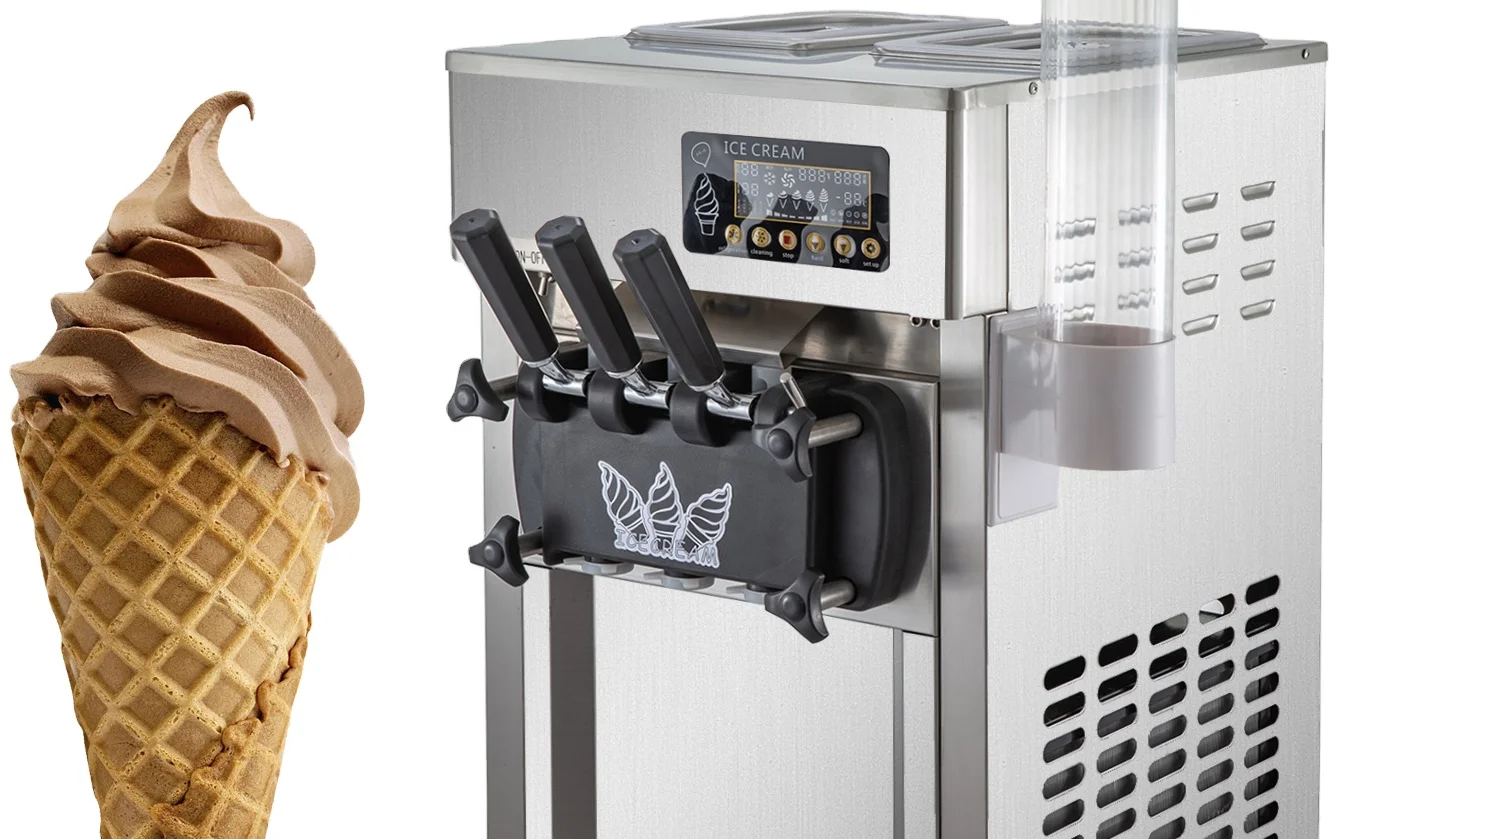 Vevor 탁상용 소형 연약한 아이스크림 기계 가격 상업적인 아이스크림 기계 Buy 아이스크림 기계 요구르트 아이스크림 기계